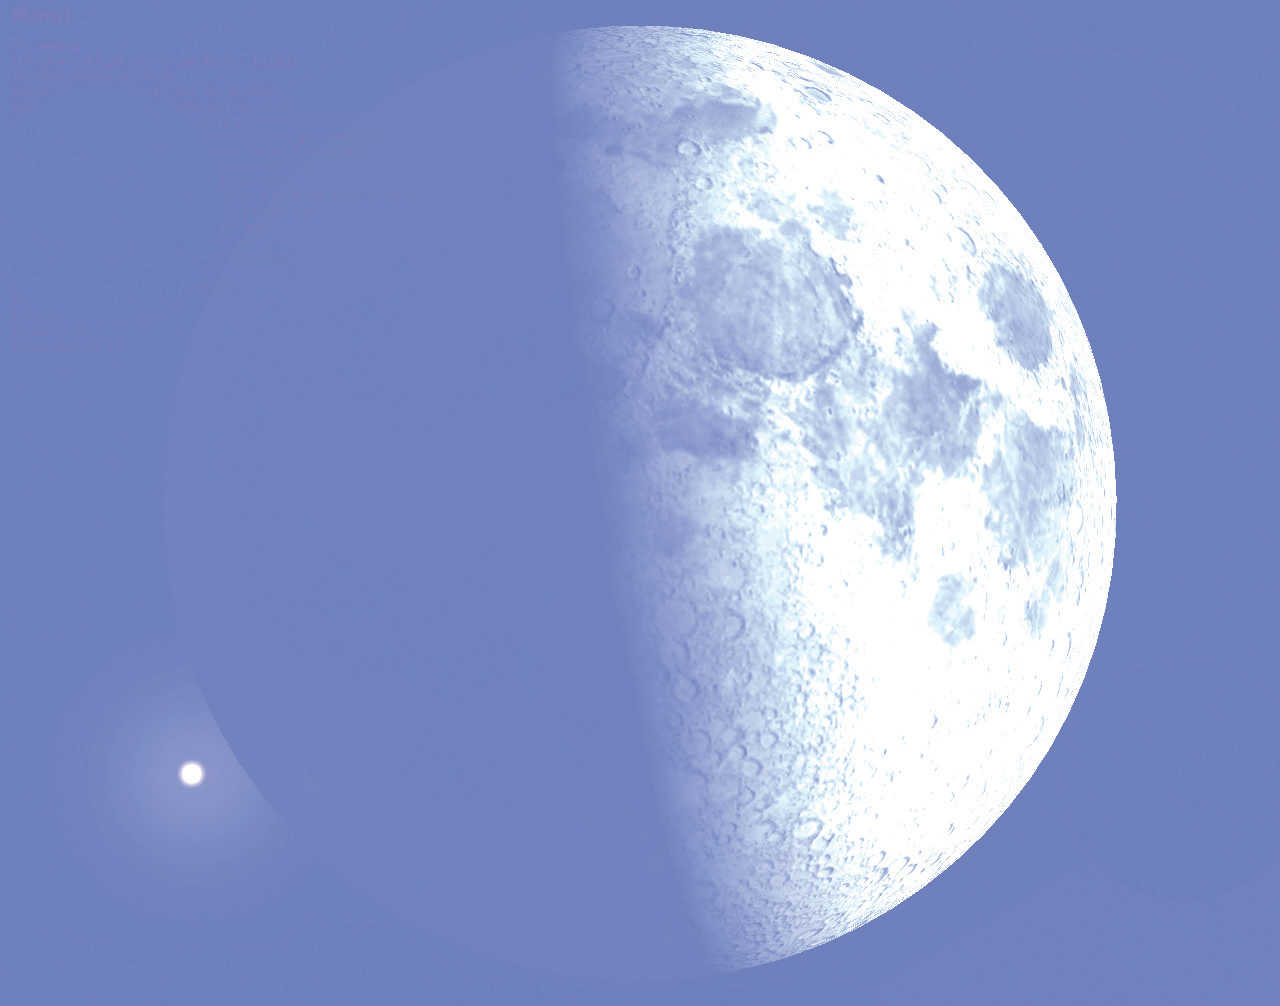 Zakrycie w dniu 23 stycznia 2018 miało miejsce o zachodzie Słońca podczas pierwszej kwadry Księżyca. Stellarium